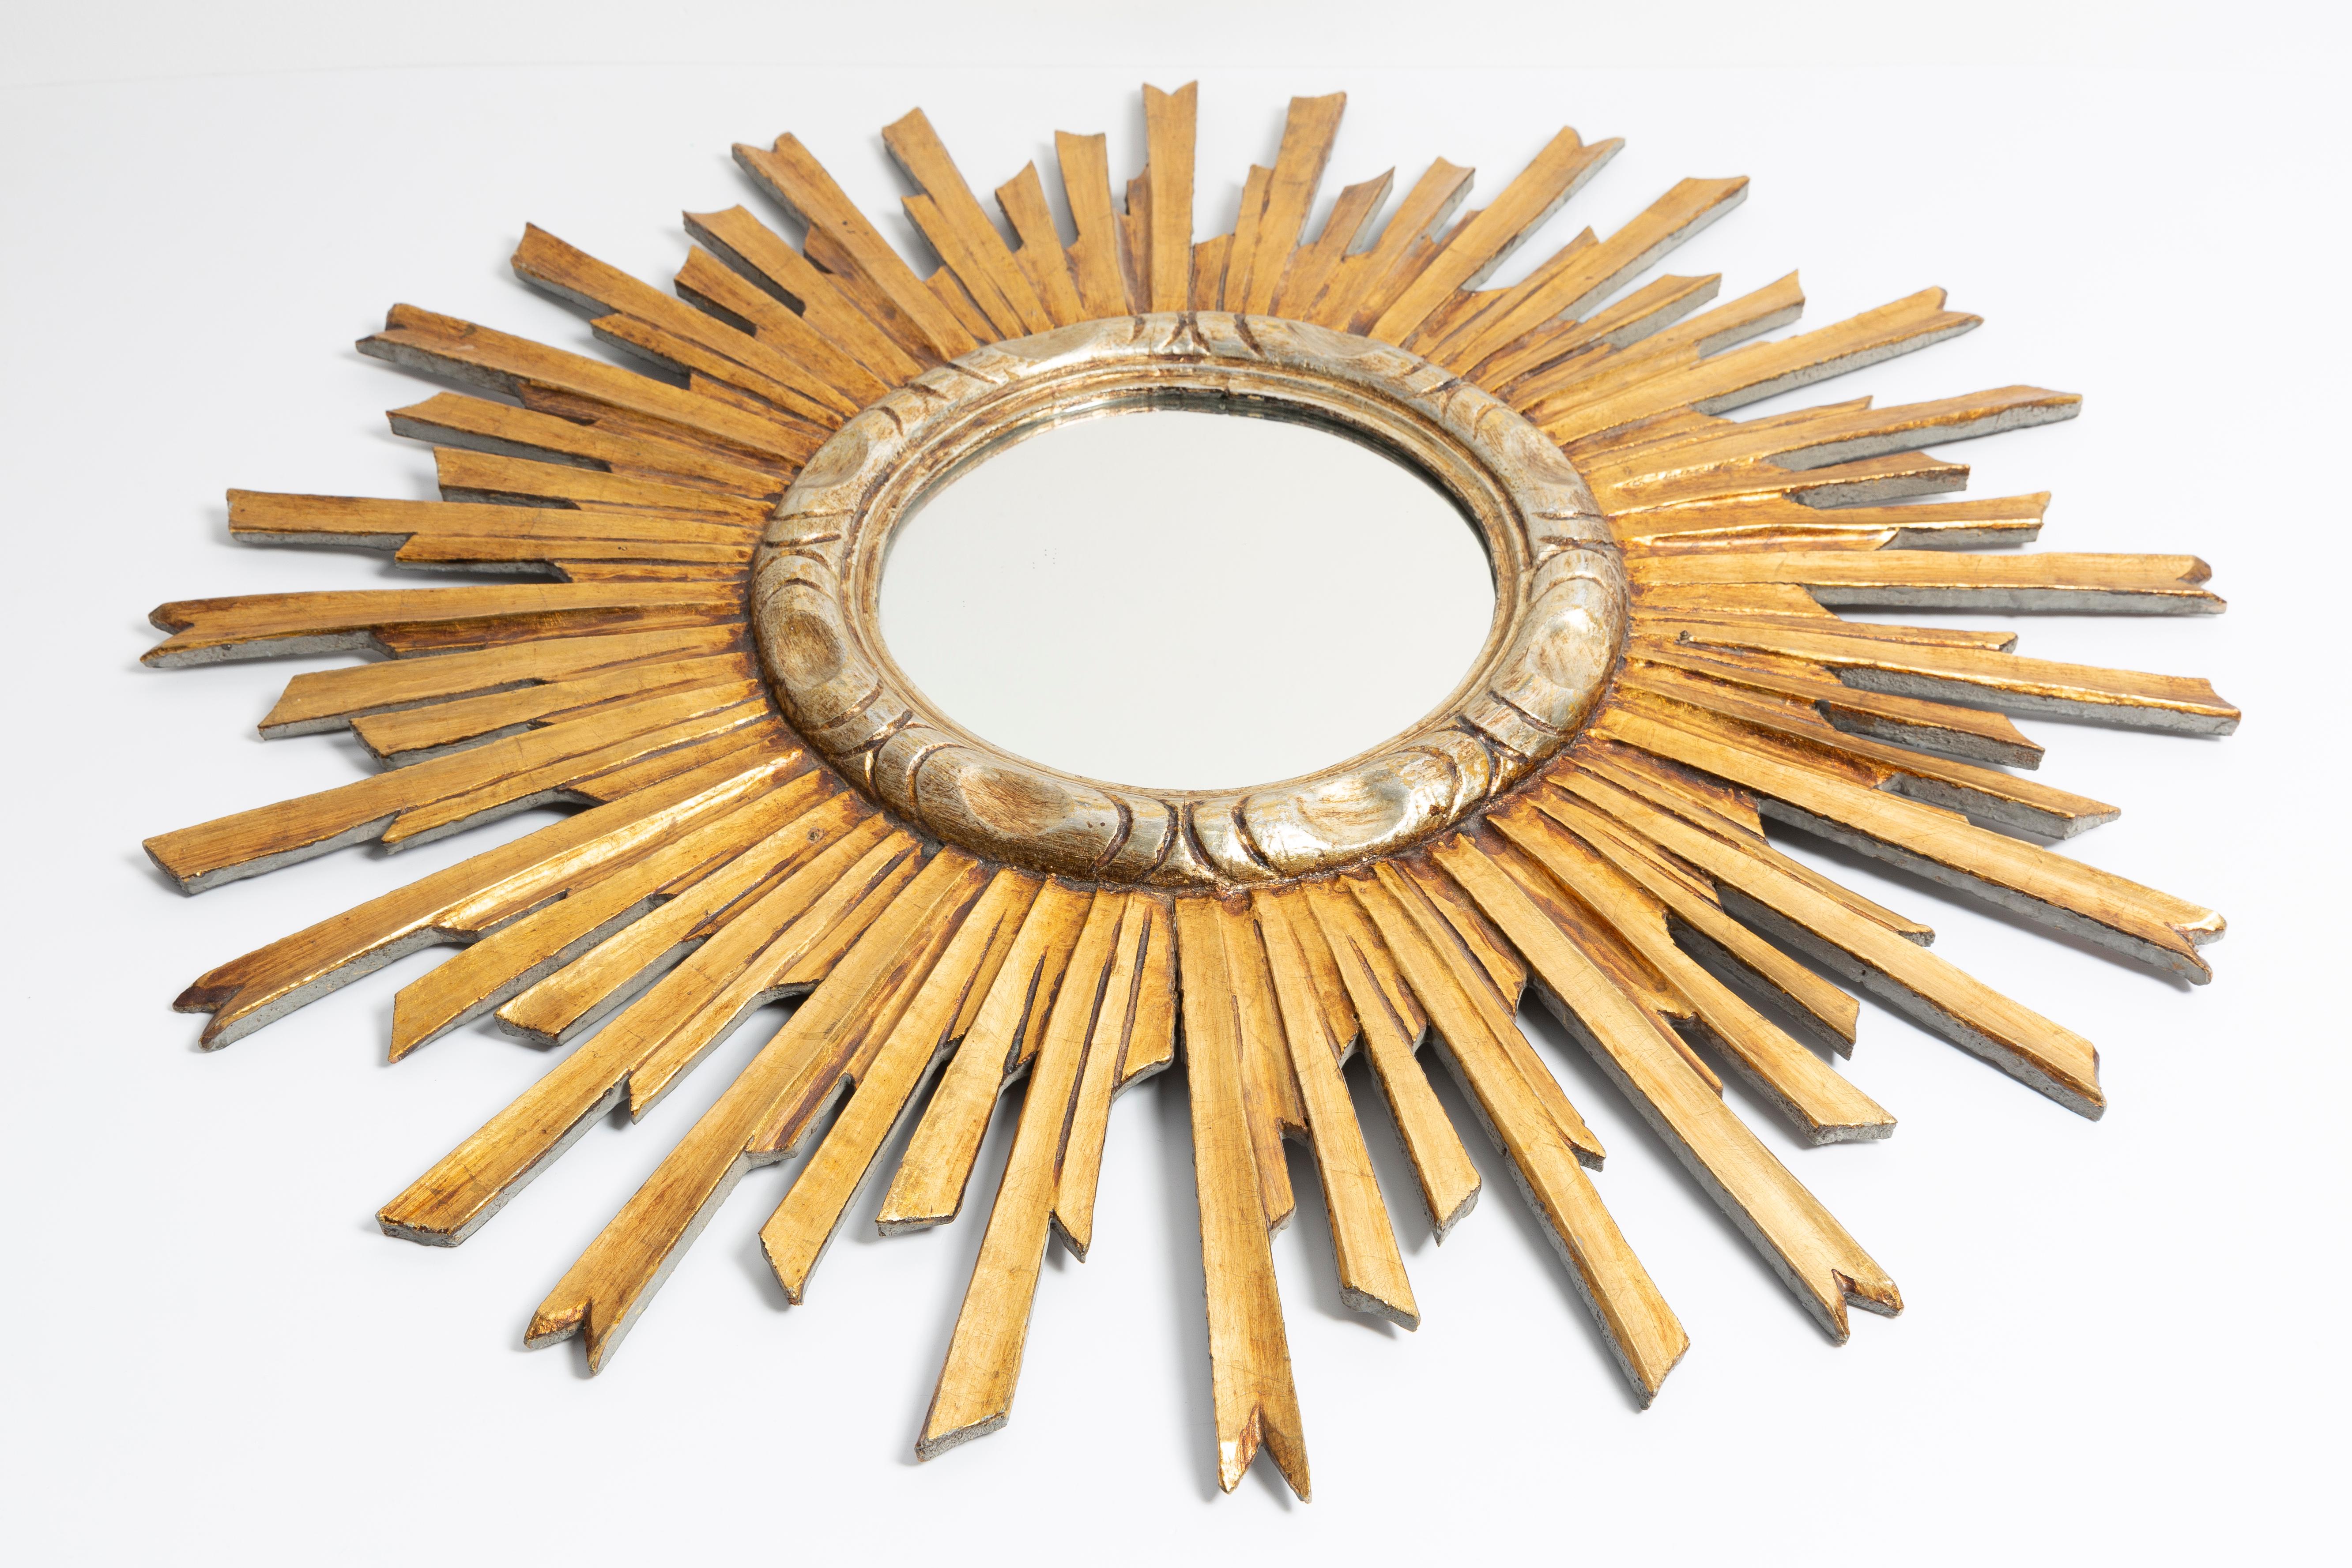 Vintage-Spiegel in einem goldenen, dekorativen, sonnenförmigen Rahmen aus Italien. Der Rahmen ist aus Holz gefertigt. Guter Originalzustand, keine Schäden oder Risse im Rahmen, die Spiegelscheibe hat minimale Mängel. Ein schönes Stück für jedes